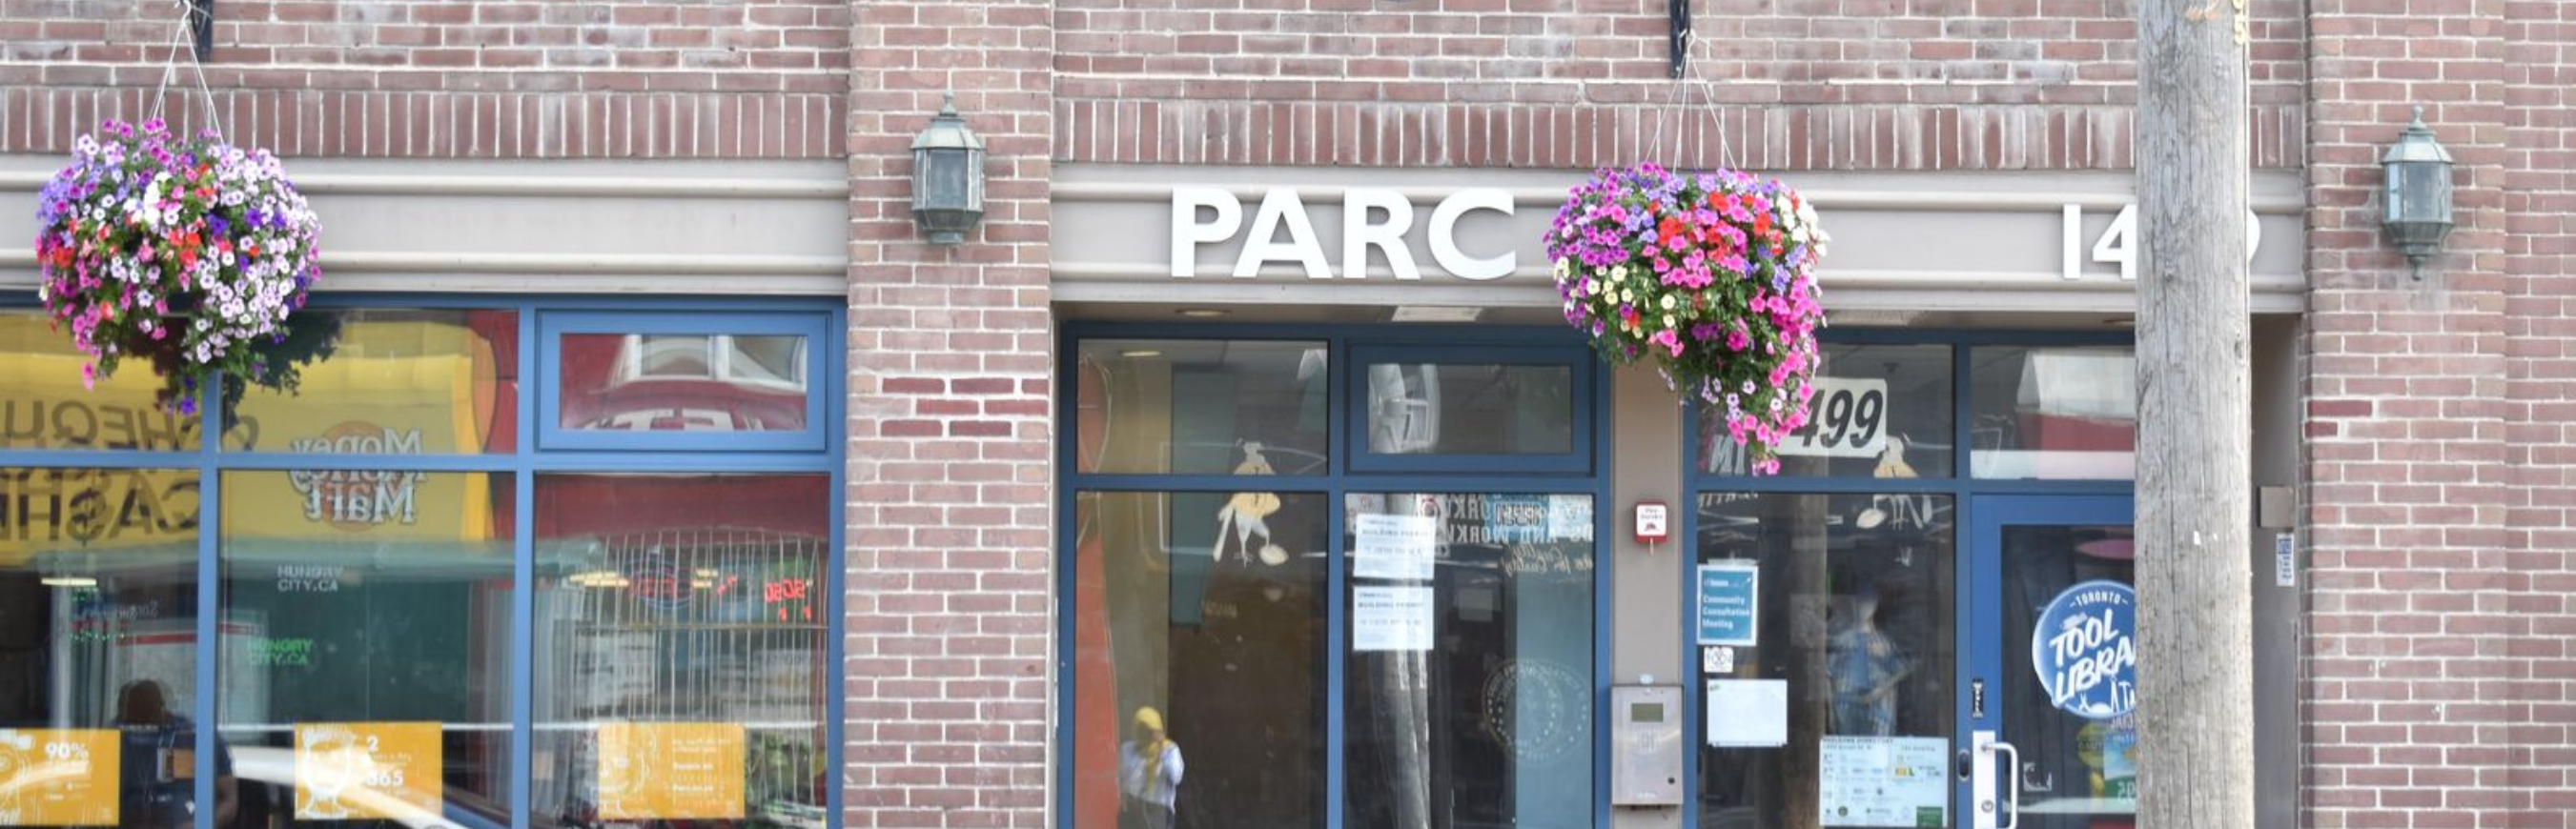 PARC Building Facade